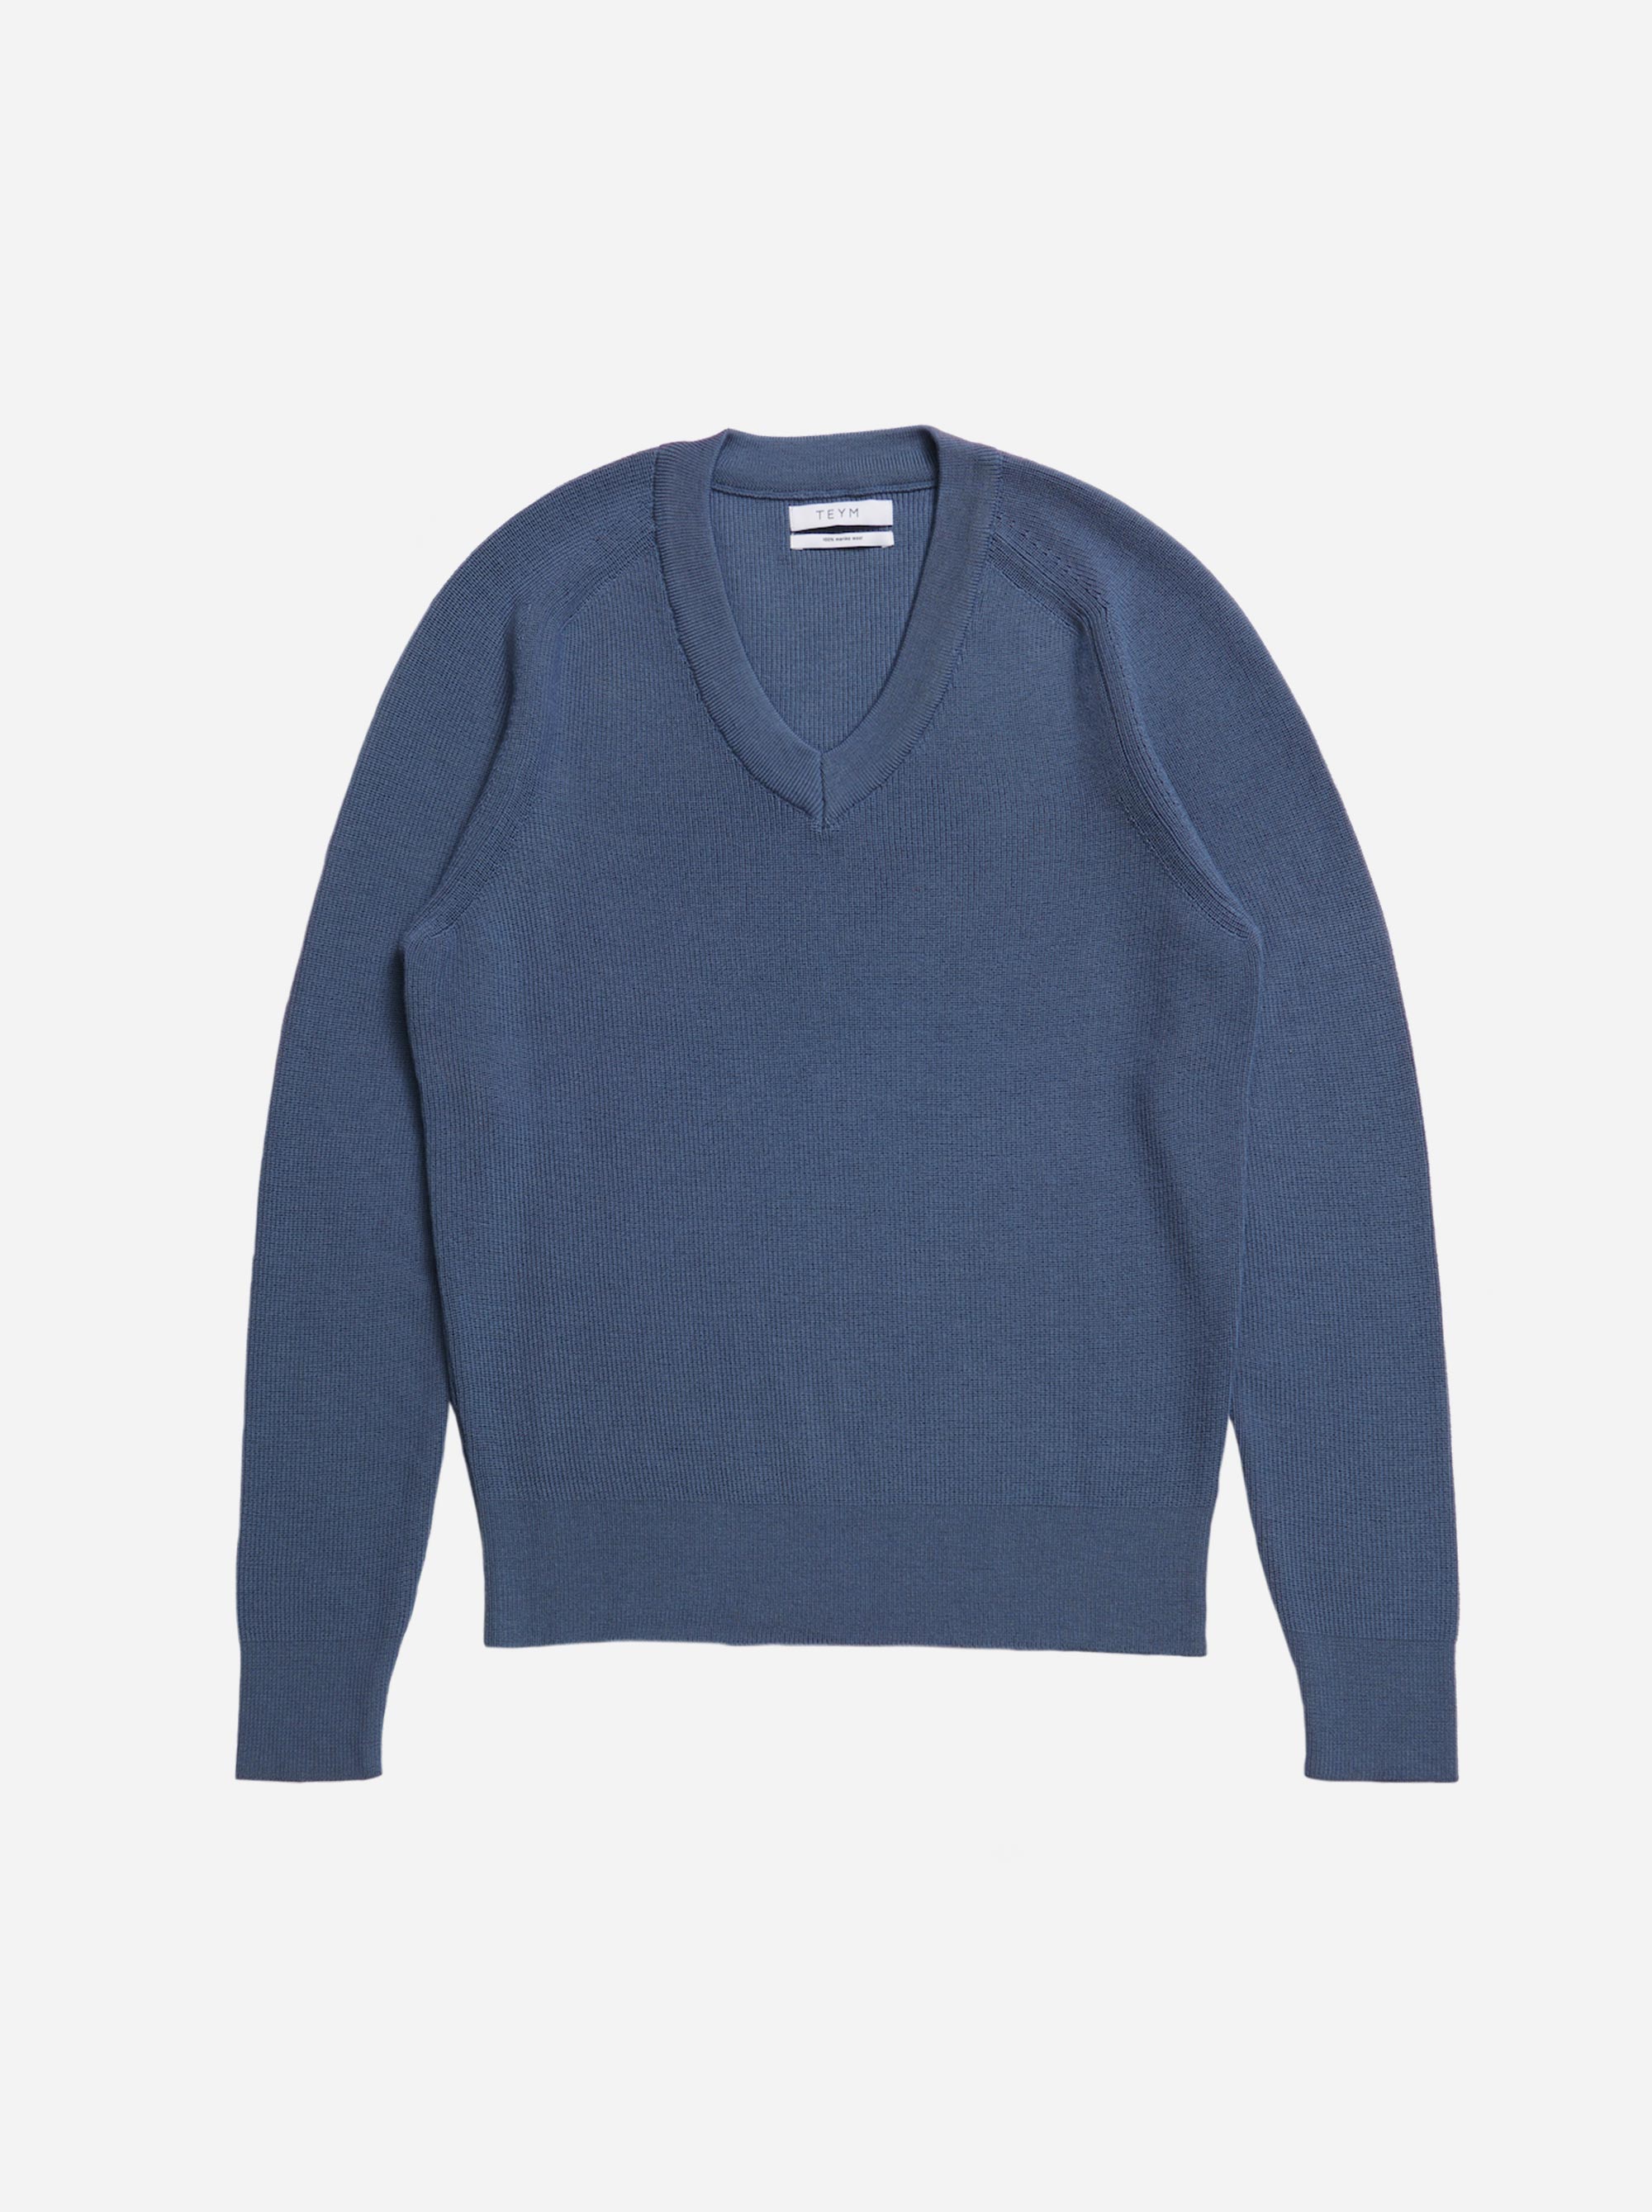 Teym - V-Neck - The Merino Sweater - Men - Sky blue - 4